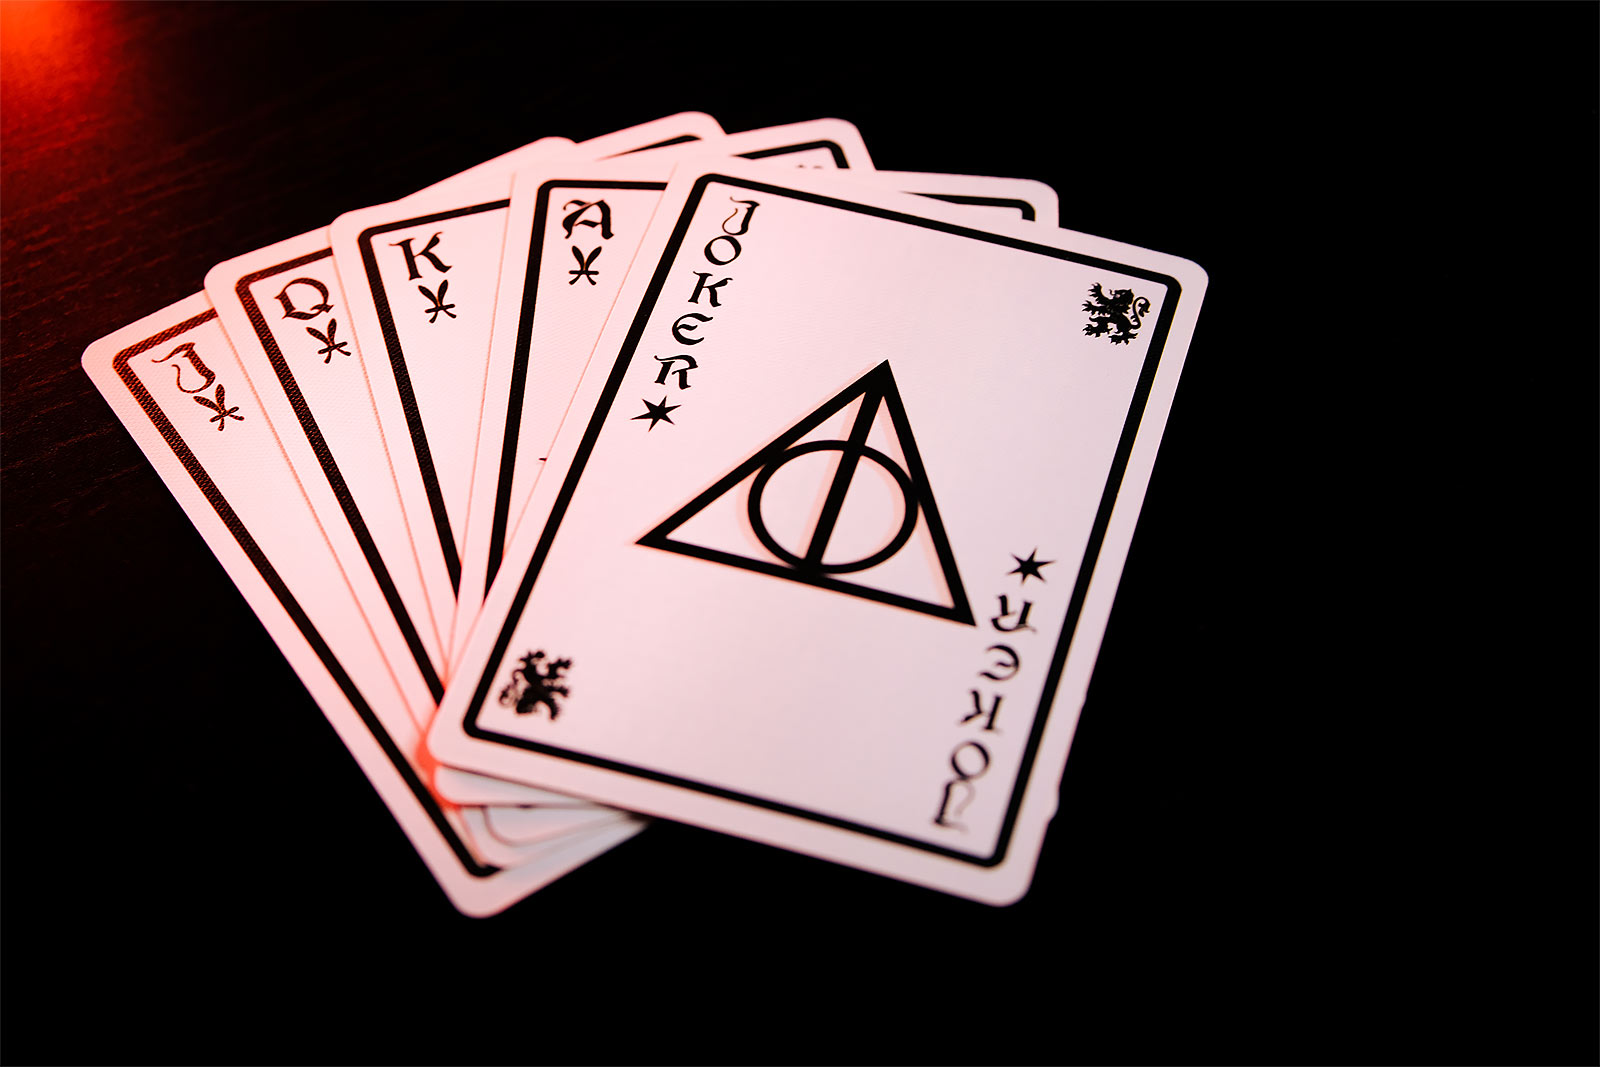 Harry Potter - Gryffindor Kartenspiel